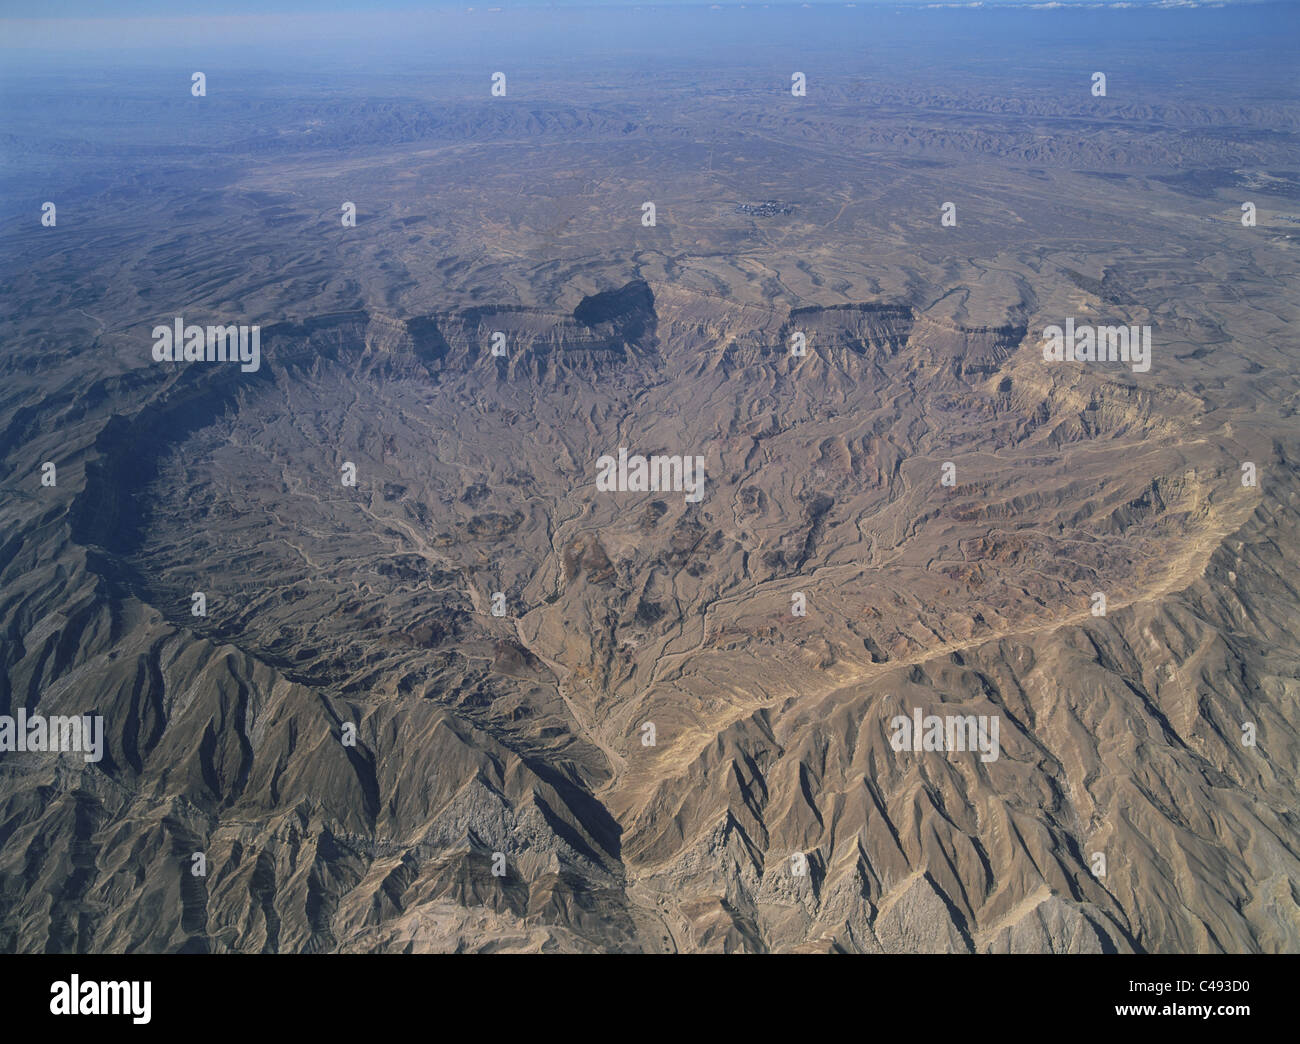 Fotografia aerea della Ramon del piccolo cratere nella centrale del deserto del Negev Foto Stock